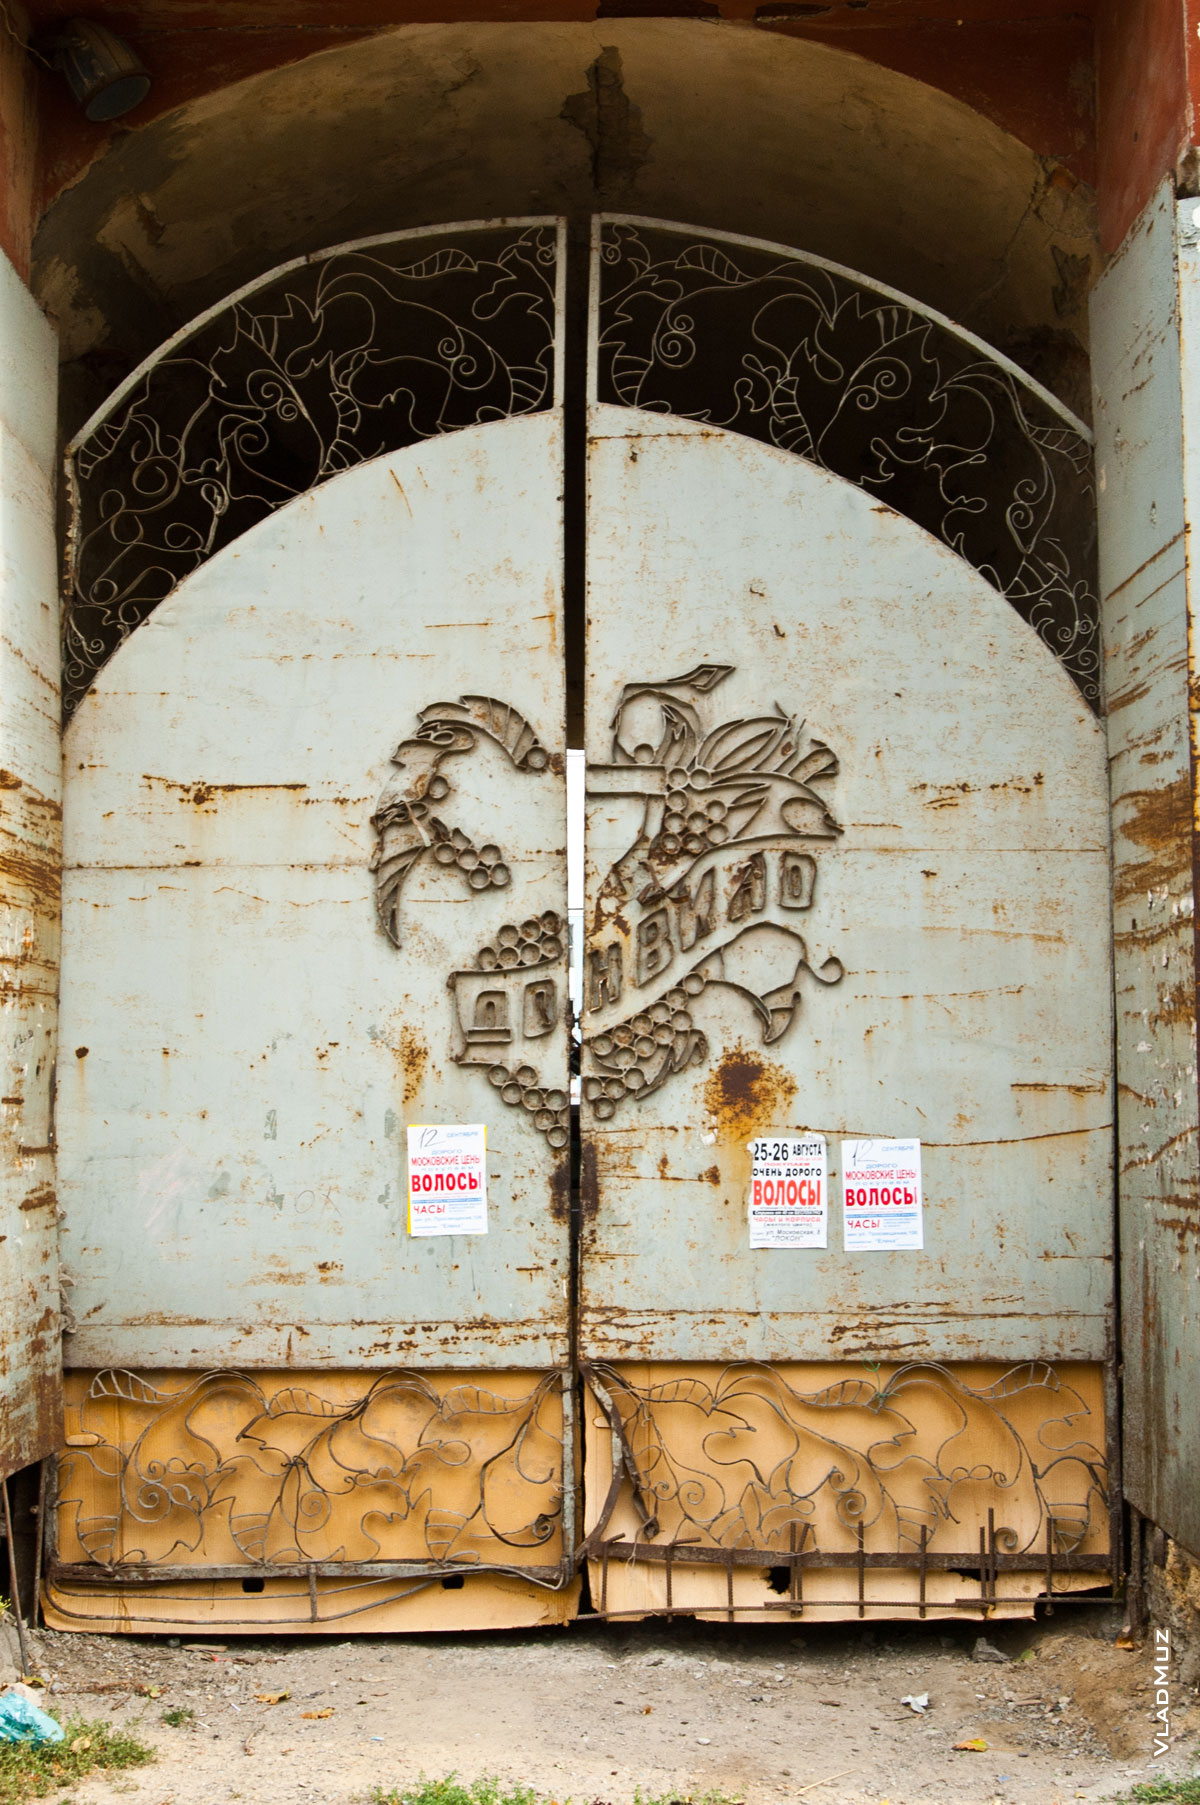 Фото металлического барельефа «Донвино» на воротах новочеркасского винного завода